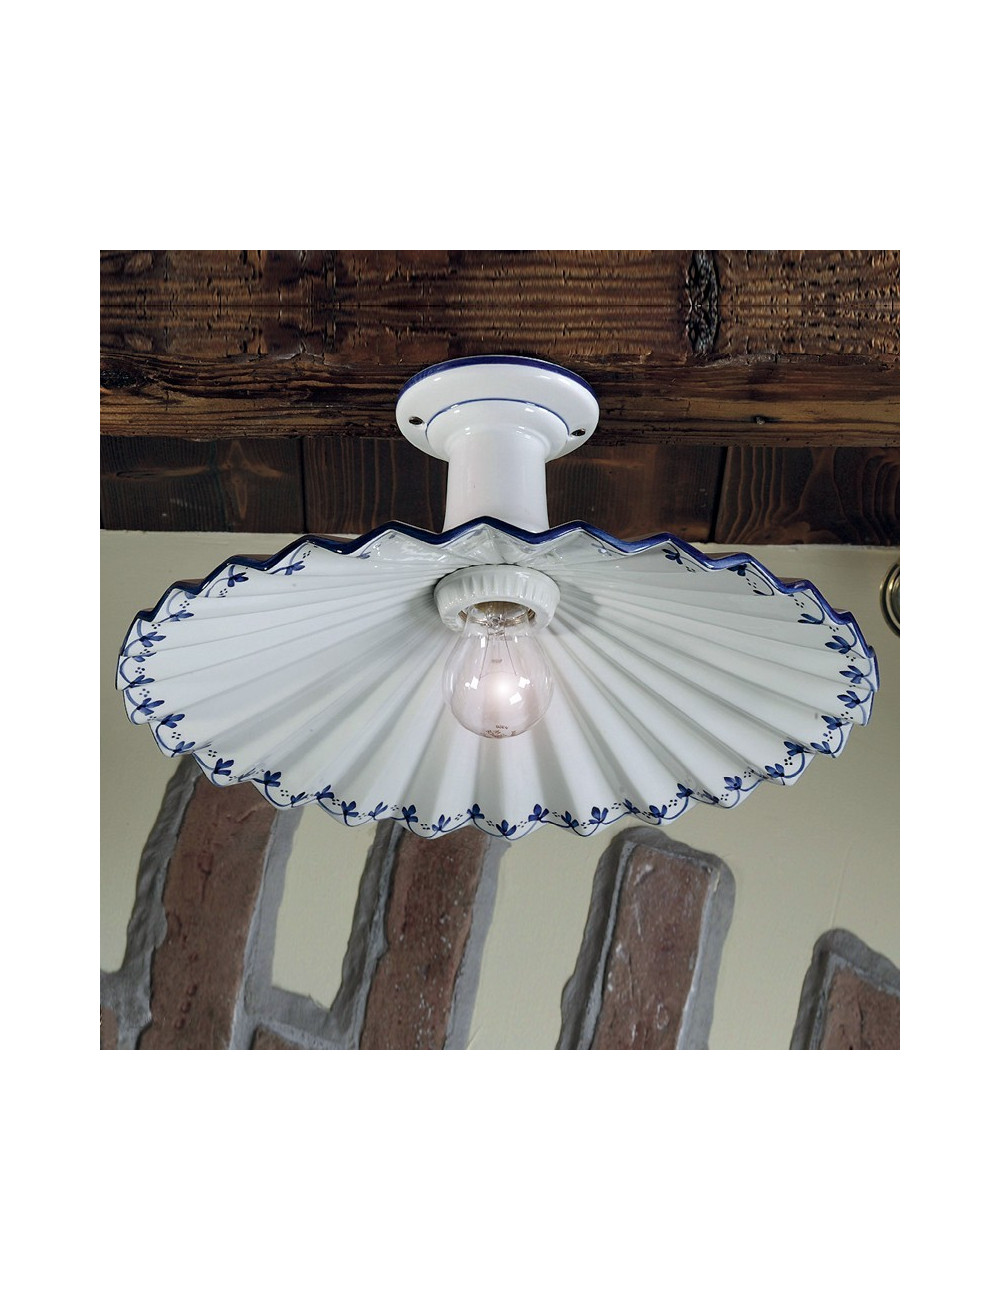 LINA Lampada da Soffitto in Ceramica Ondulata Decorata a Mano illuminazione cucina taverna rustica